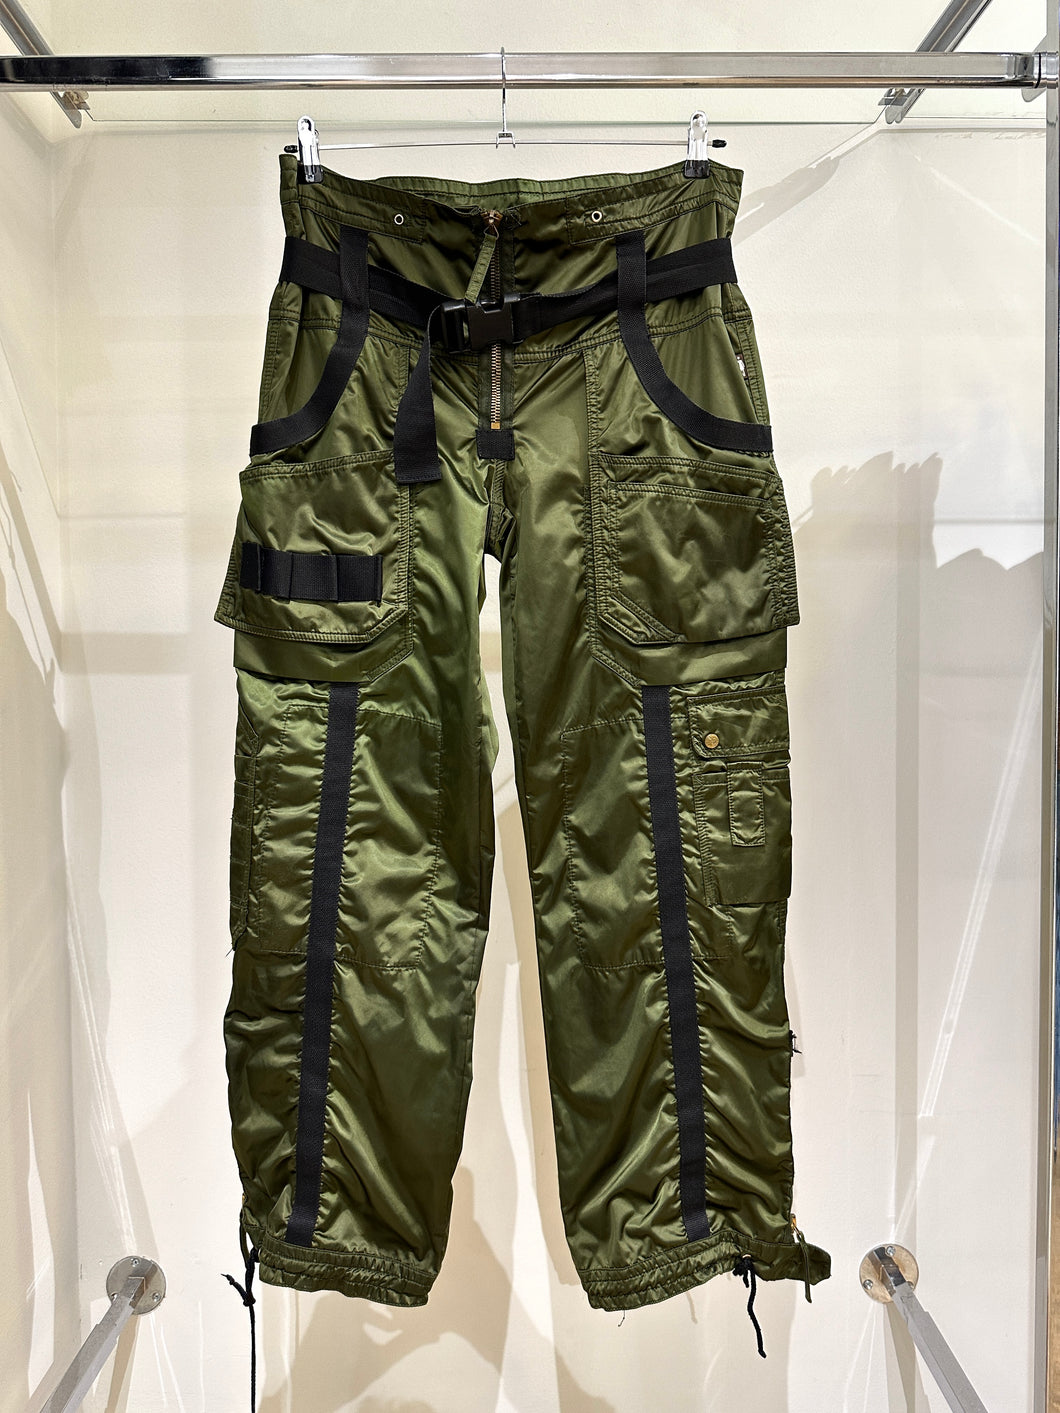 AW2003 Jean Paul Gaultier parachute bondage pants